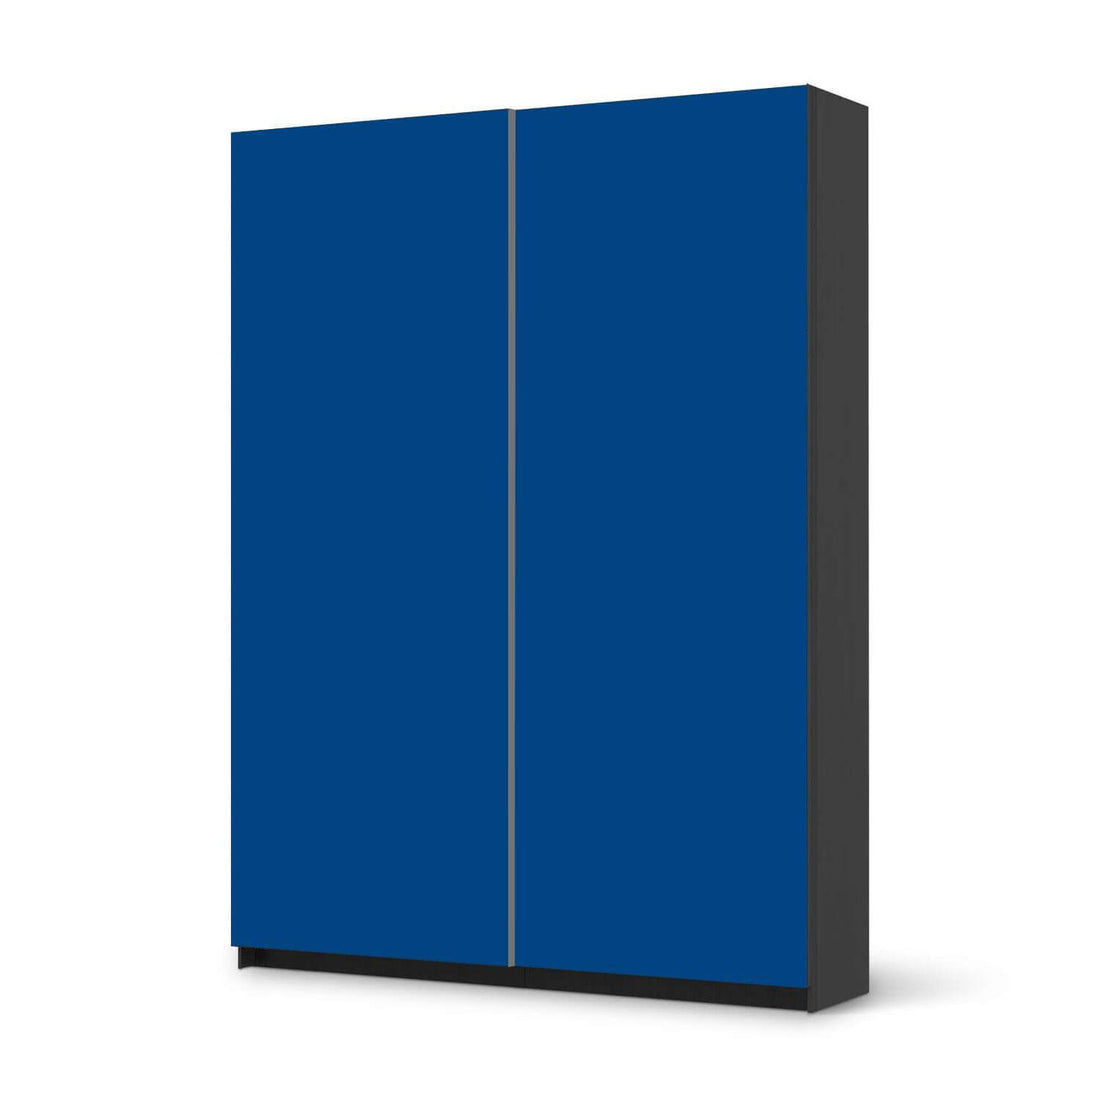 Möbel Klebefolie Blau Dark - IKEA Pax Schrank 201 cm Höhe - Schiebetür 75 cm - schwarz